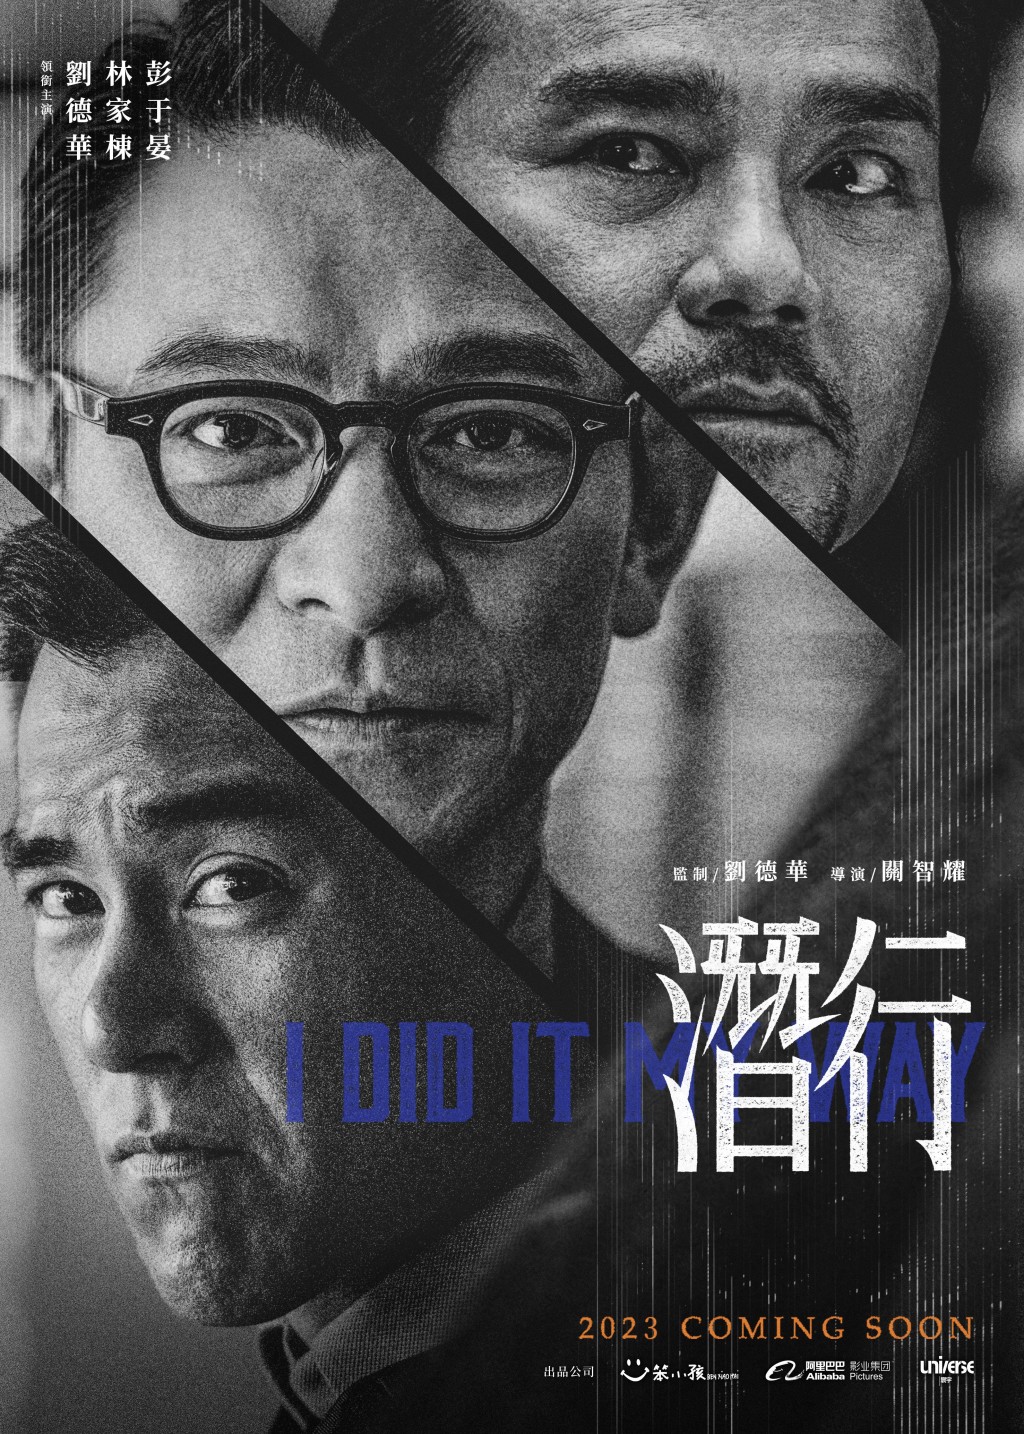 劉德華監製並聯同林家棟、彭于晏主演的電影《潛行》發布官方海報。